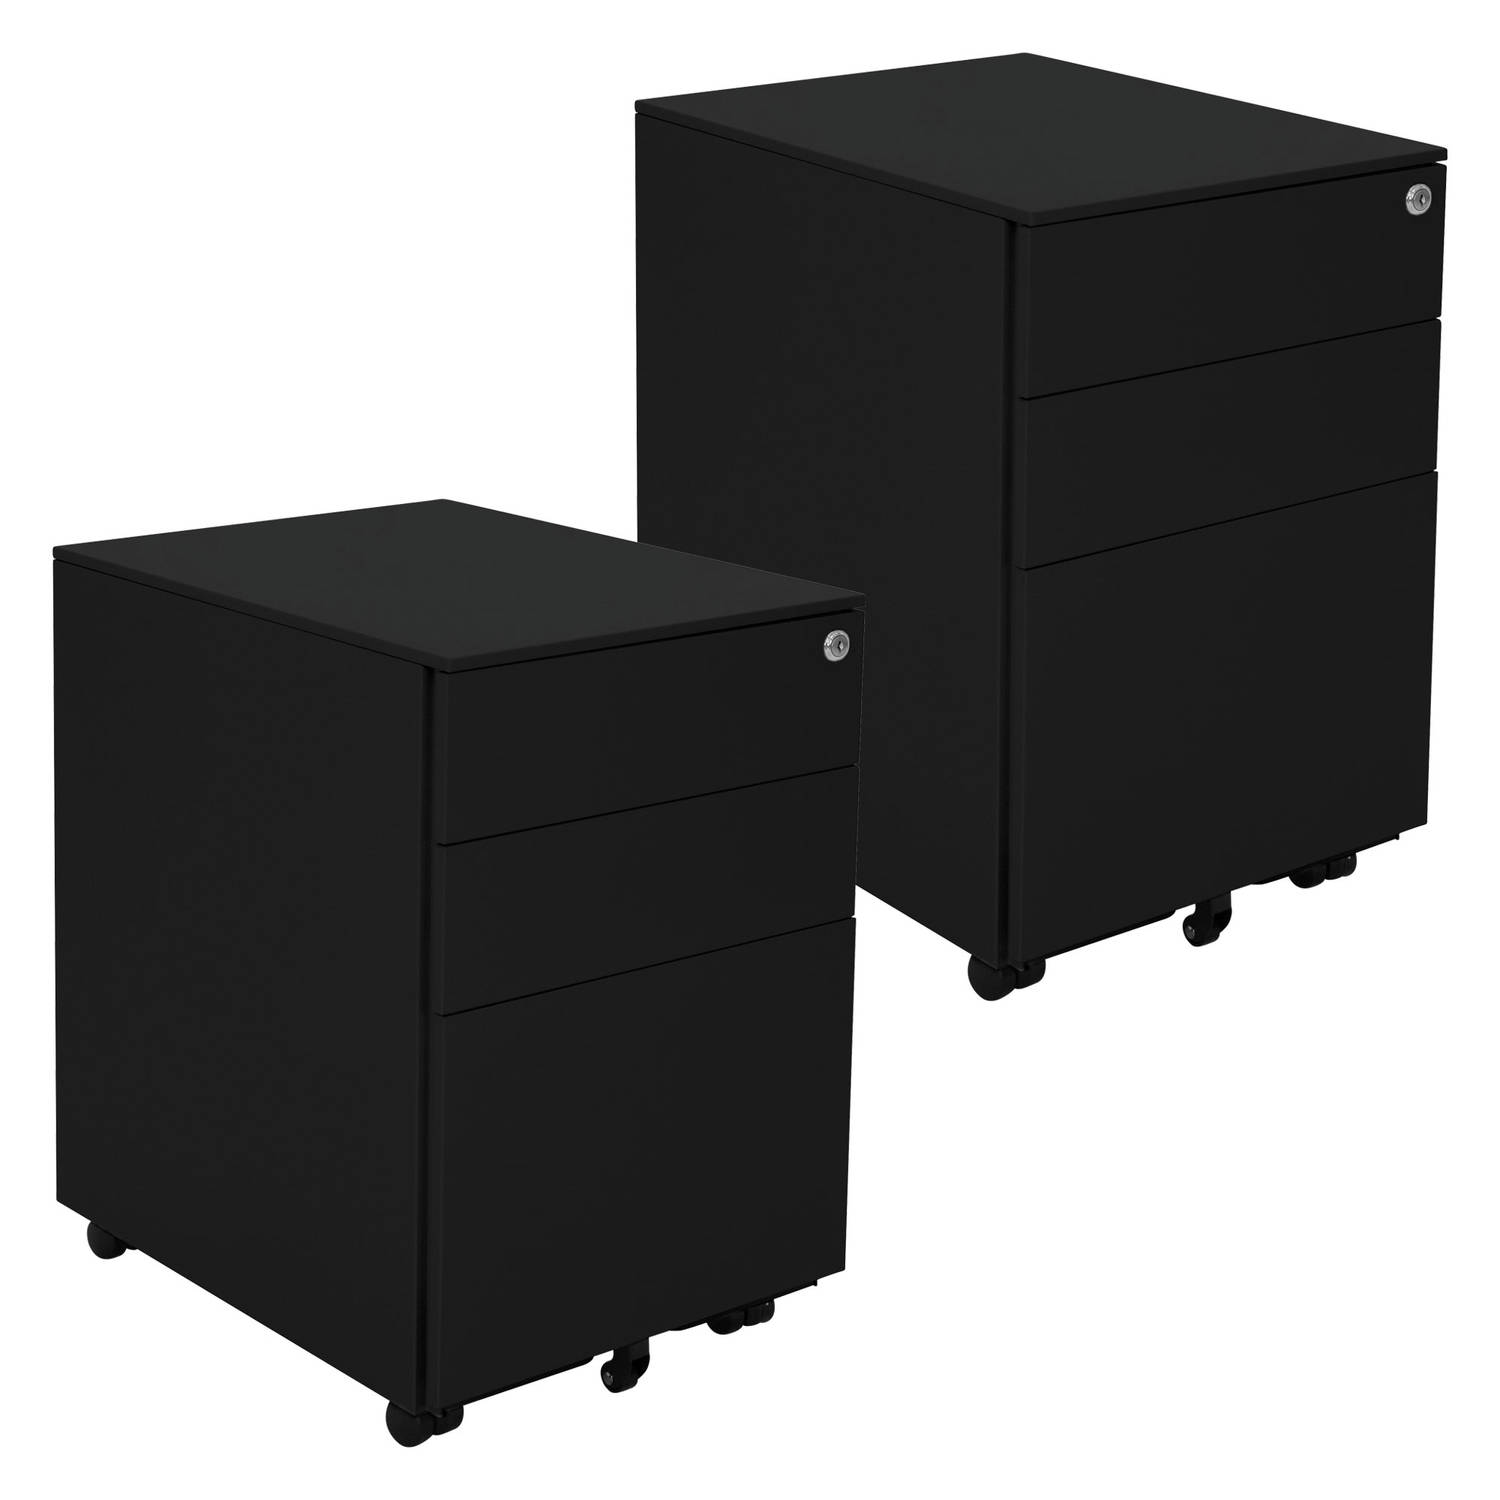 ML-Design Set van 2 metalen verrijdbare containers met 3 laden, zwart, 39x50x56 cm, staal, verrijdbare archiefkast, afsluitbare kantoorkast, kantoorcontainer met hangmap voor dossi